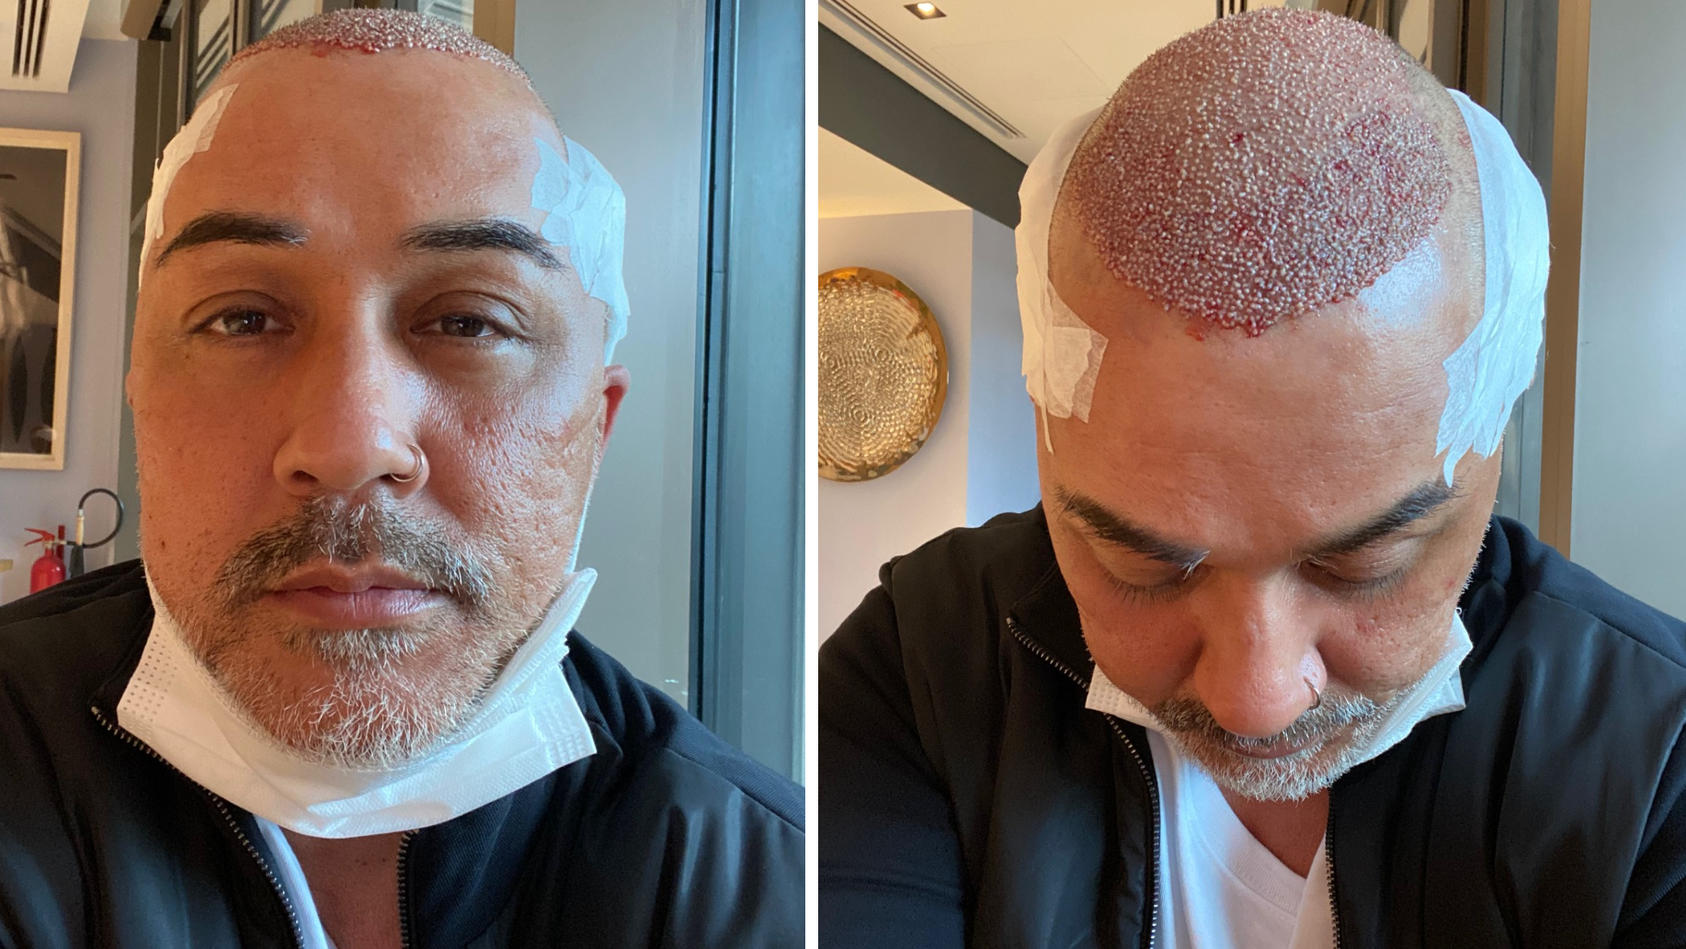 Mike Leon Grosch hat sich in der Türkei einer Haartransplantation unterzogen.